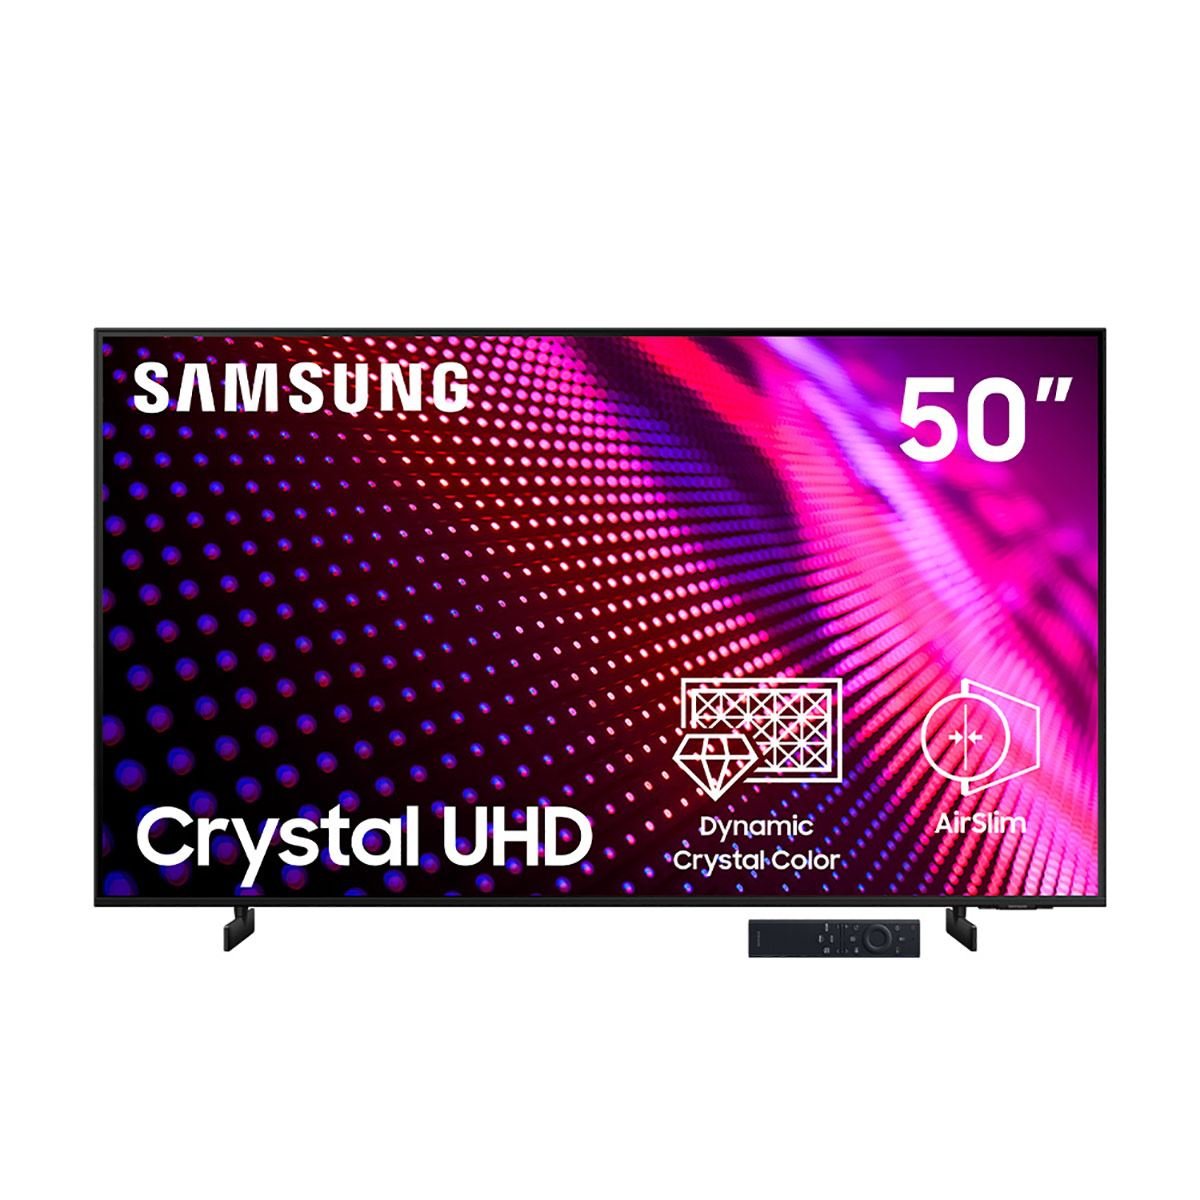  SAMSUNG UN50AU8000FXZA - Paquete de TV LED inteligente UHD 4K  Crystal UHD de 50 pulgadas con paquete de protección mejorada CPS de 1 año  : Electrónica